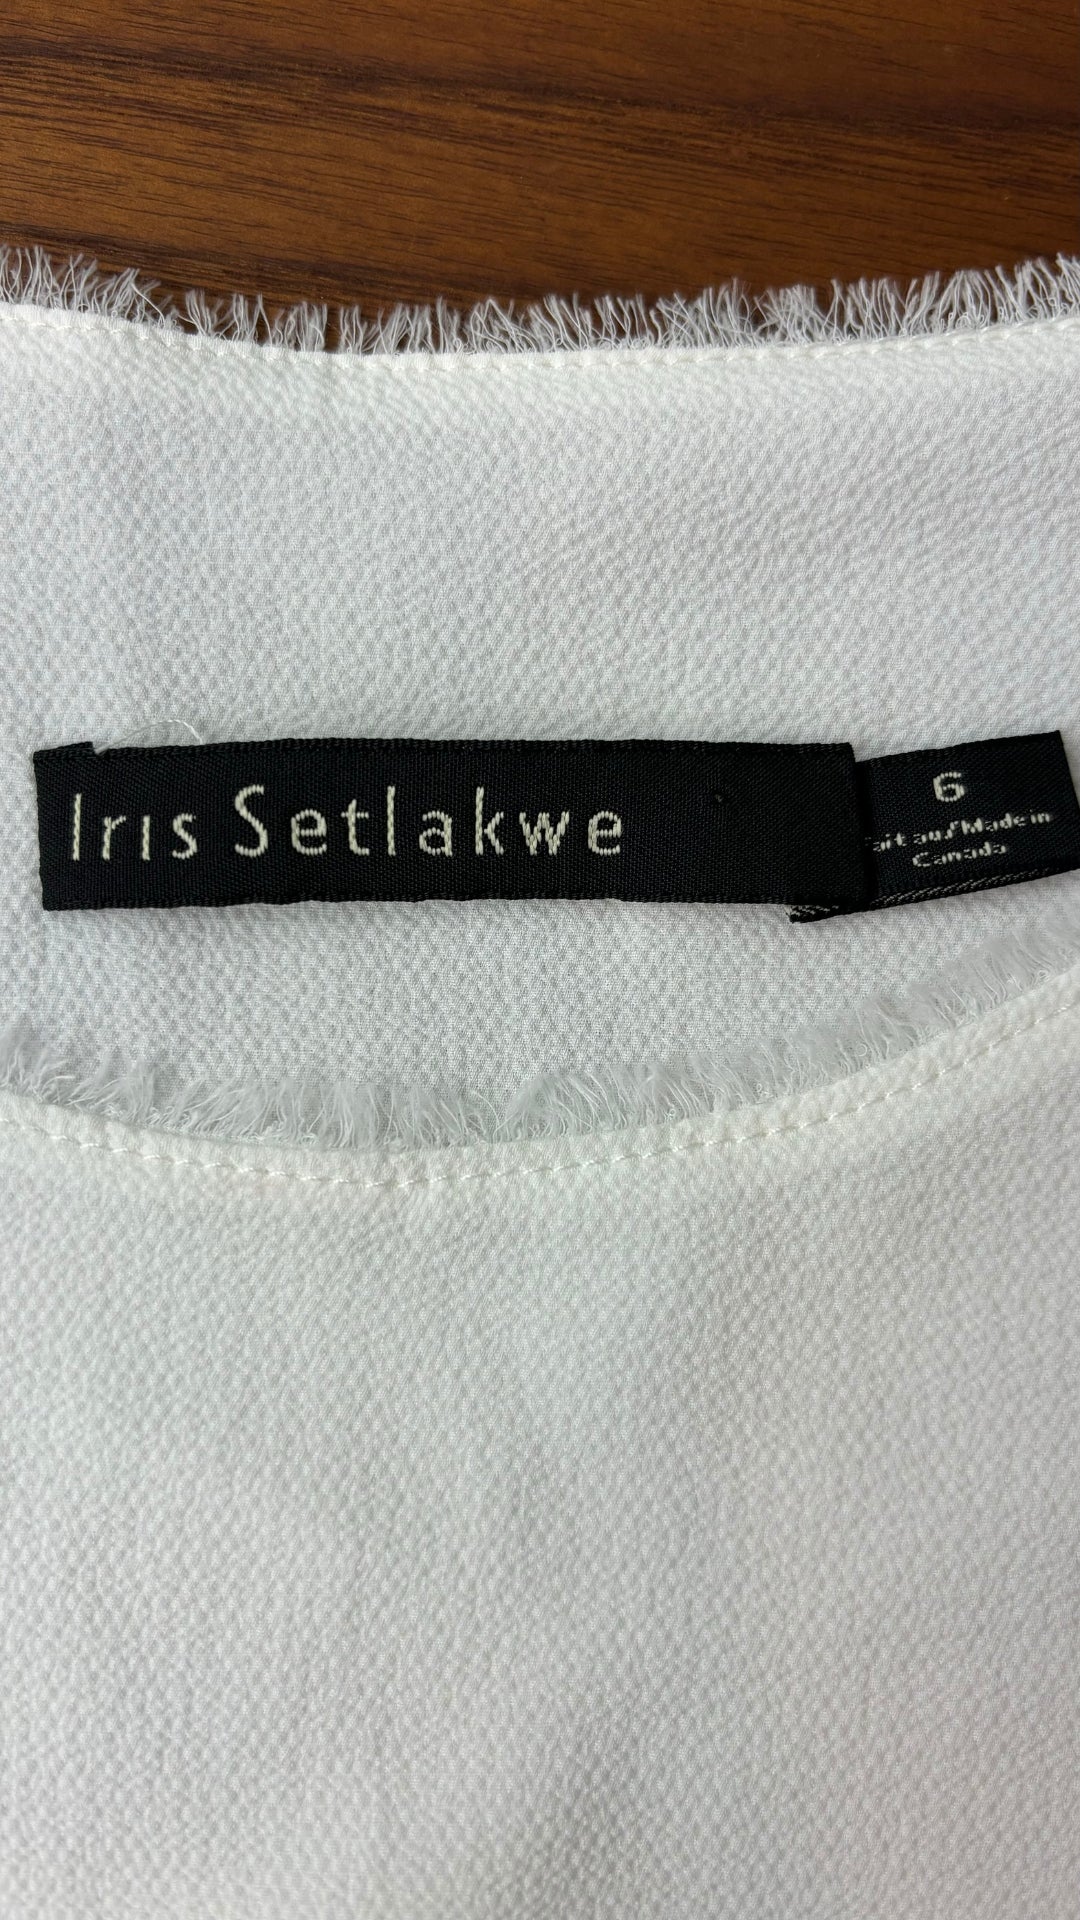 Camisole texturée blanc crème Iris Setlakwe, taille 6. Vue de l'étiquette de marque et taille.